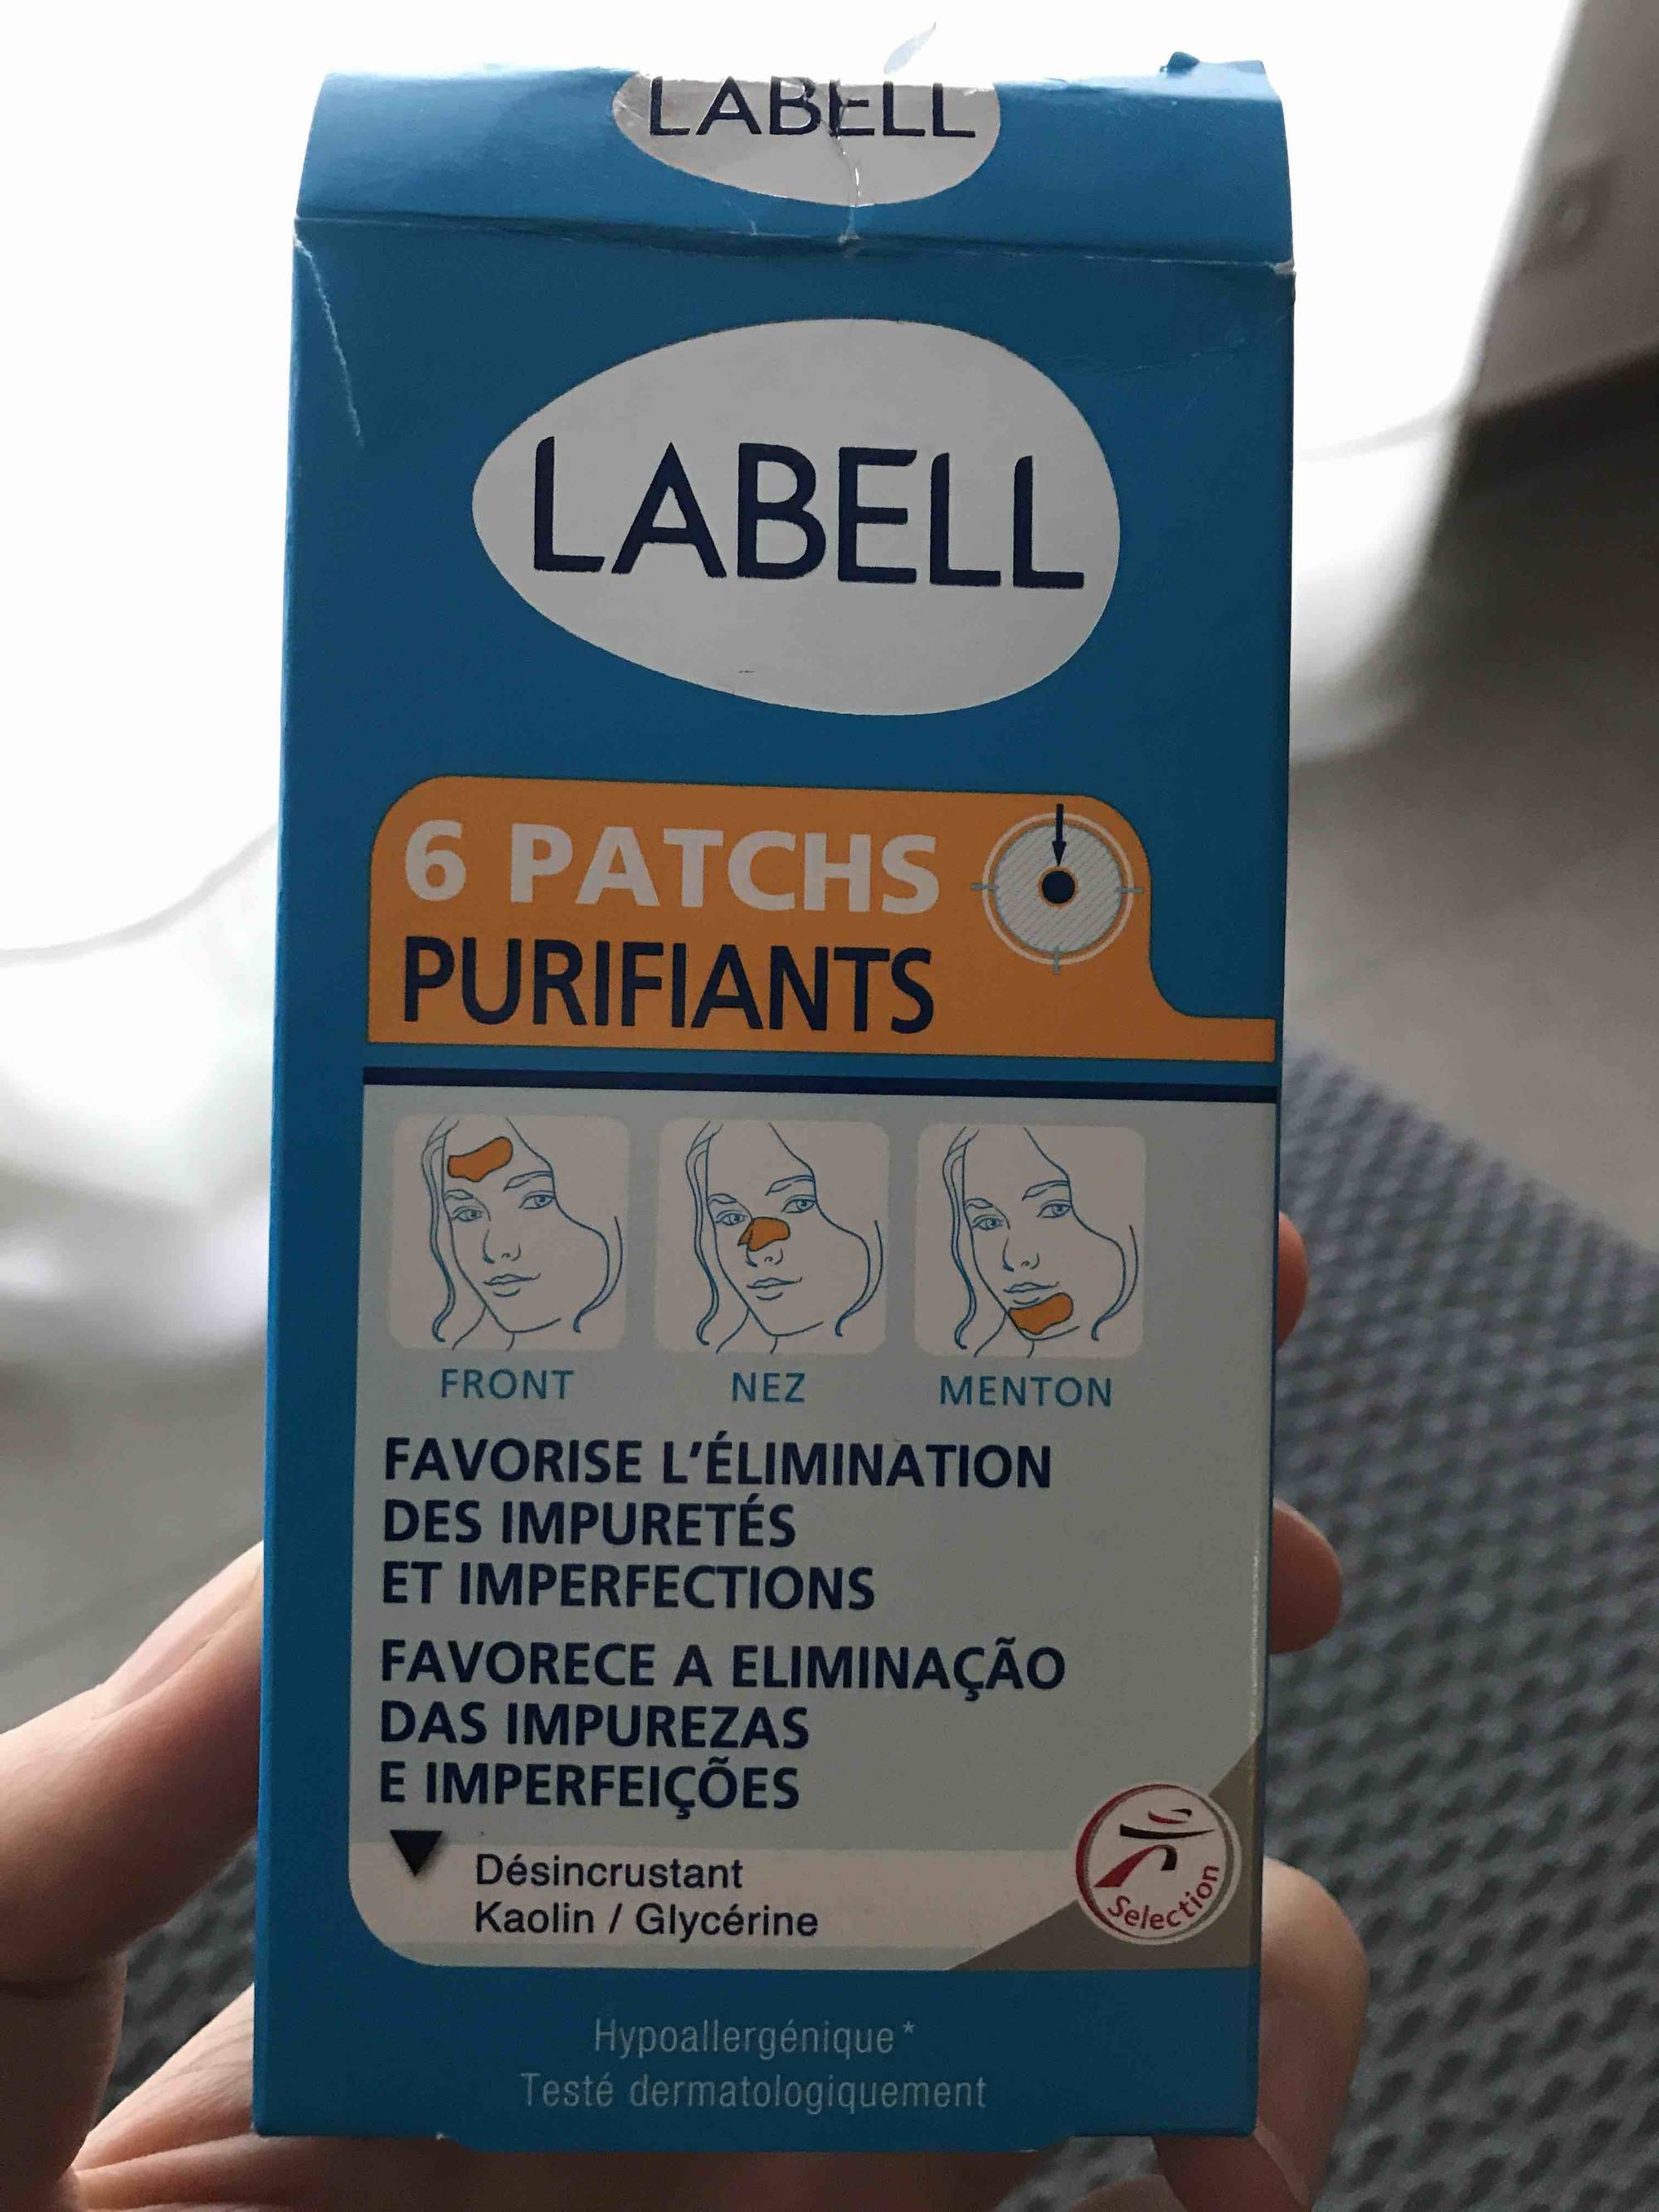 LABELL - 6 patchs purifiants - Favorise l'élimination des impuretés et imperfections front, nez et menton